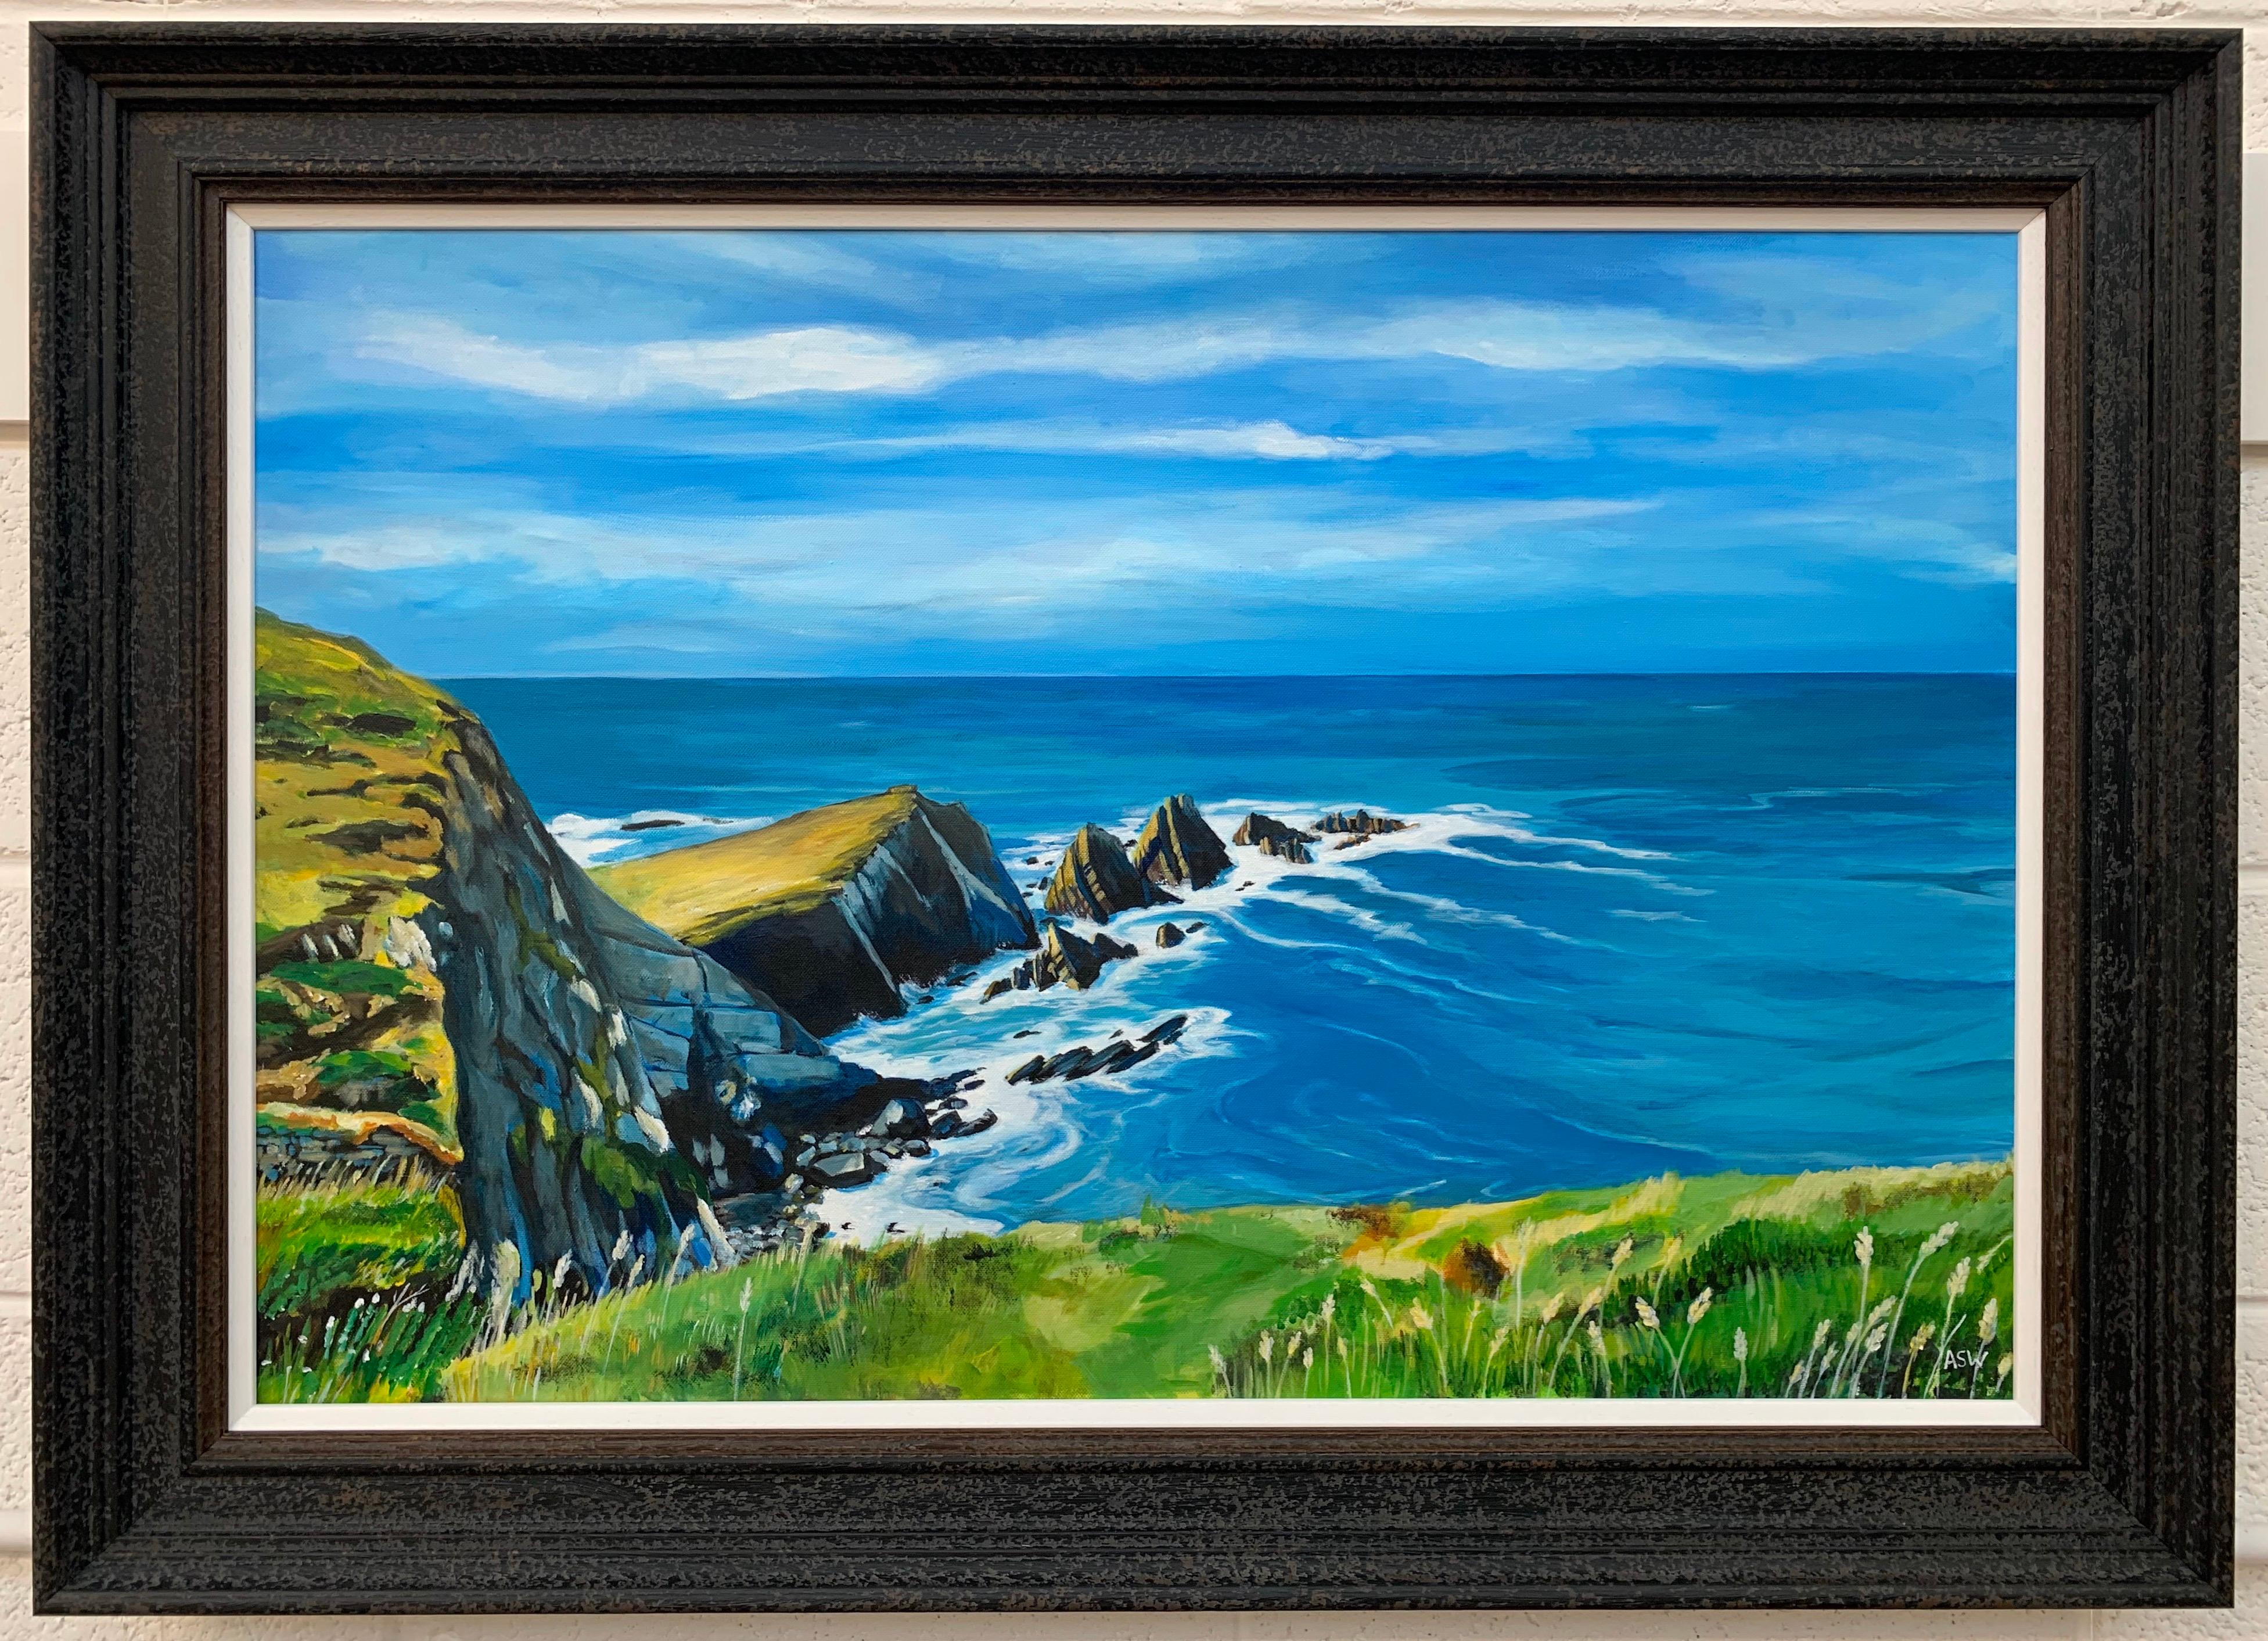 Seelandschaftsgemälde von Hartland Point in Devon, England, von der britischen Künstlerin Angela Wakefield. Eingerahmt in eine hochwertige, moderne, schwarz abgesetzte Holzleiste mit weißer Unterlage. 

Kunst misst 35,5 x 23,5 Zoll
Rahmen misst 42 x